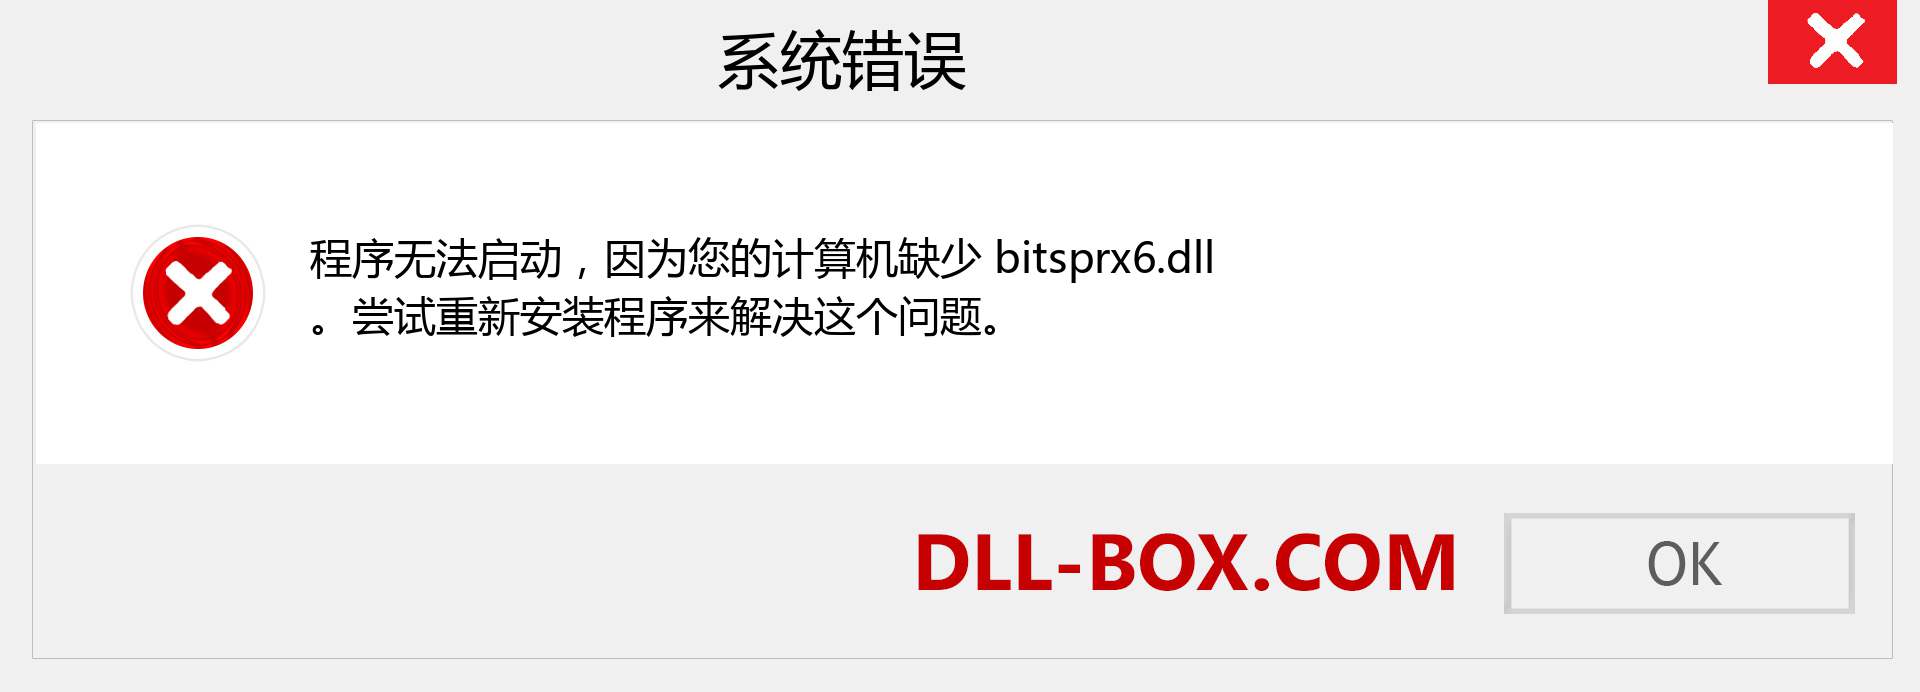 bitsprx6.dll 文件丢失？。 适用于 Windows 7、8、10 的下载 - 修复 Windows、照片、图像上的 bitsprx6 dll 丢失错误